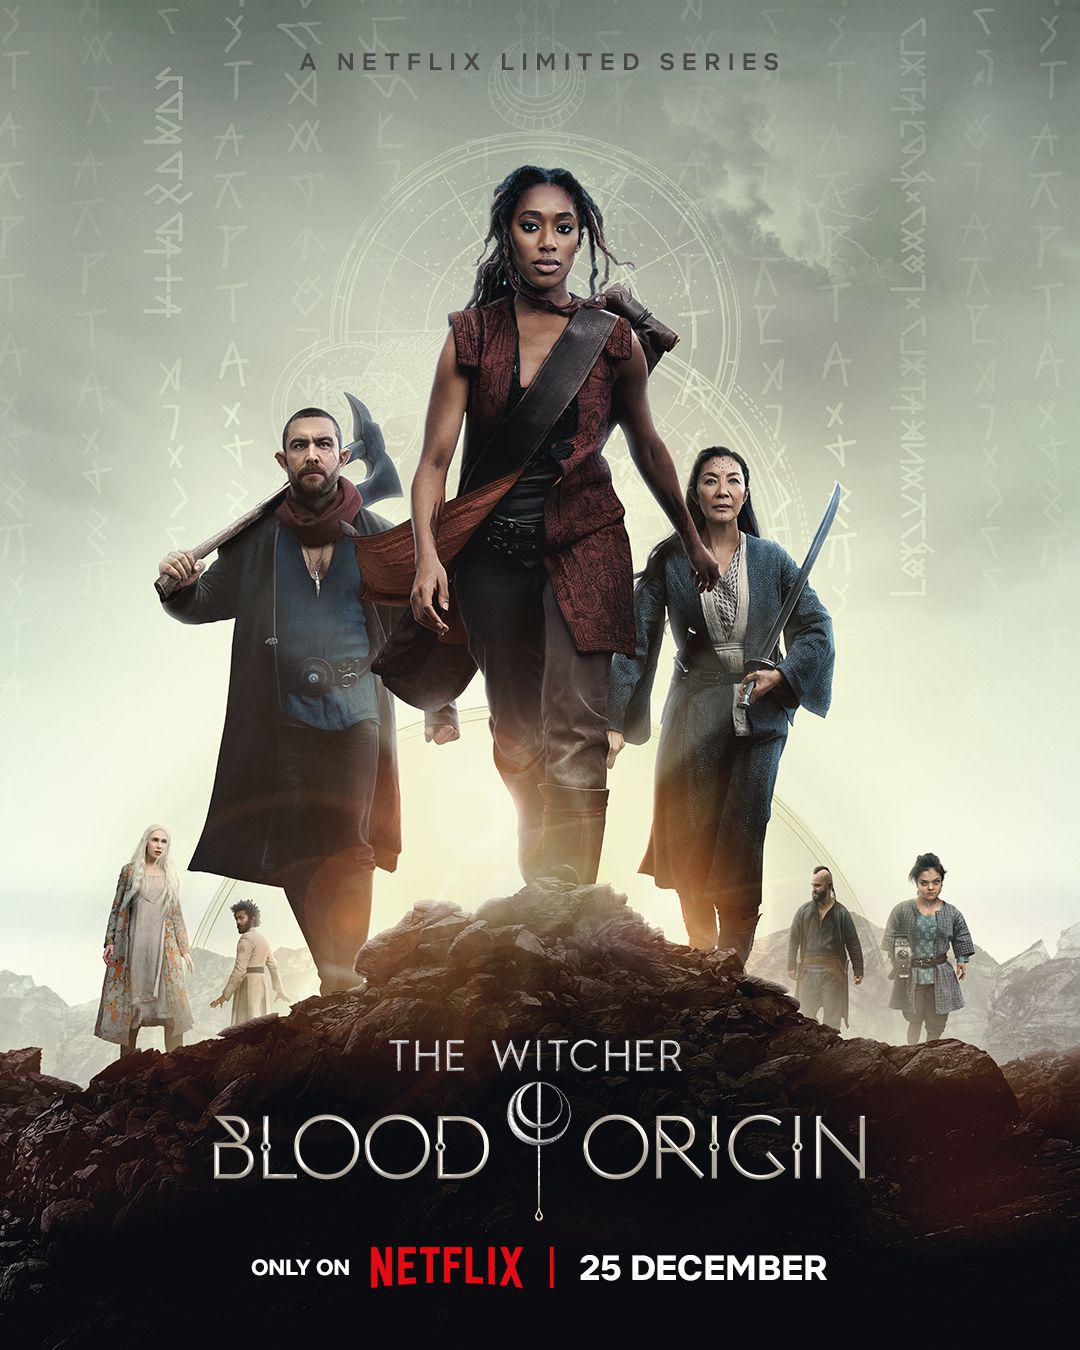 Novo trailer e pôster de The Witcher: Blood Origin revelados pela Netflix